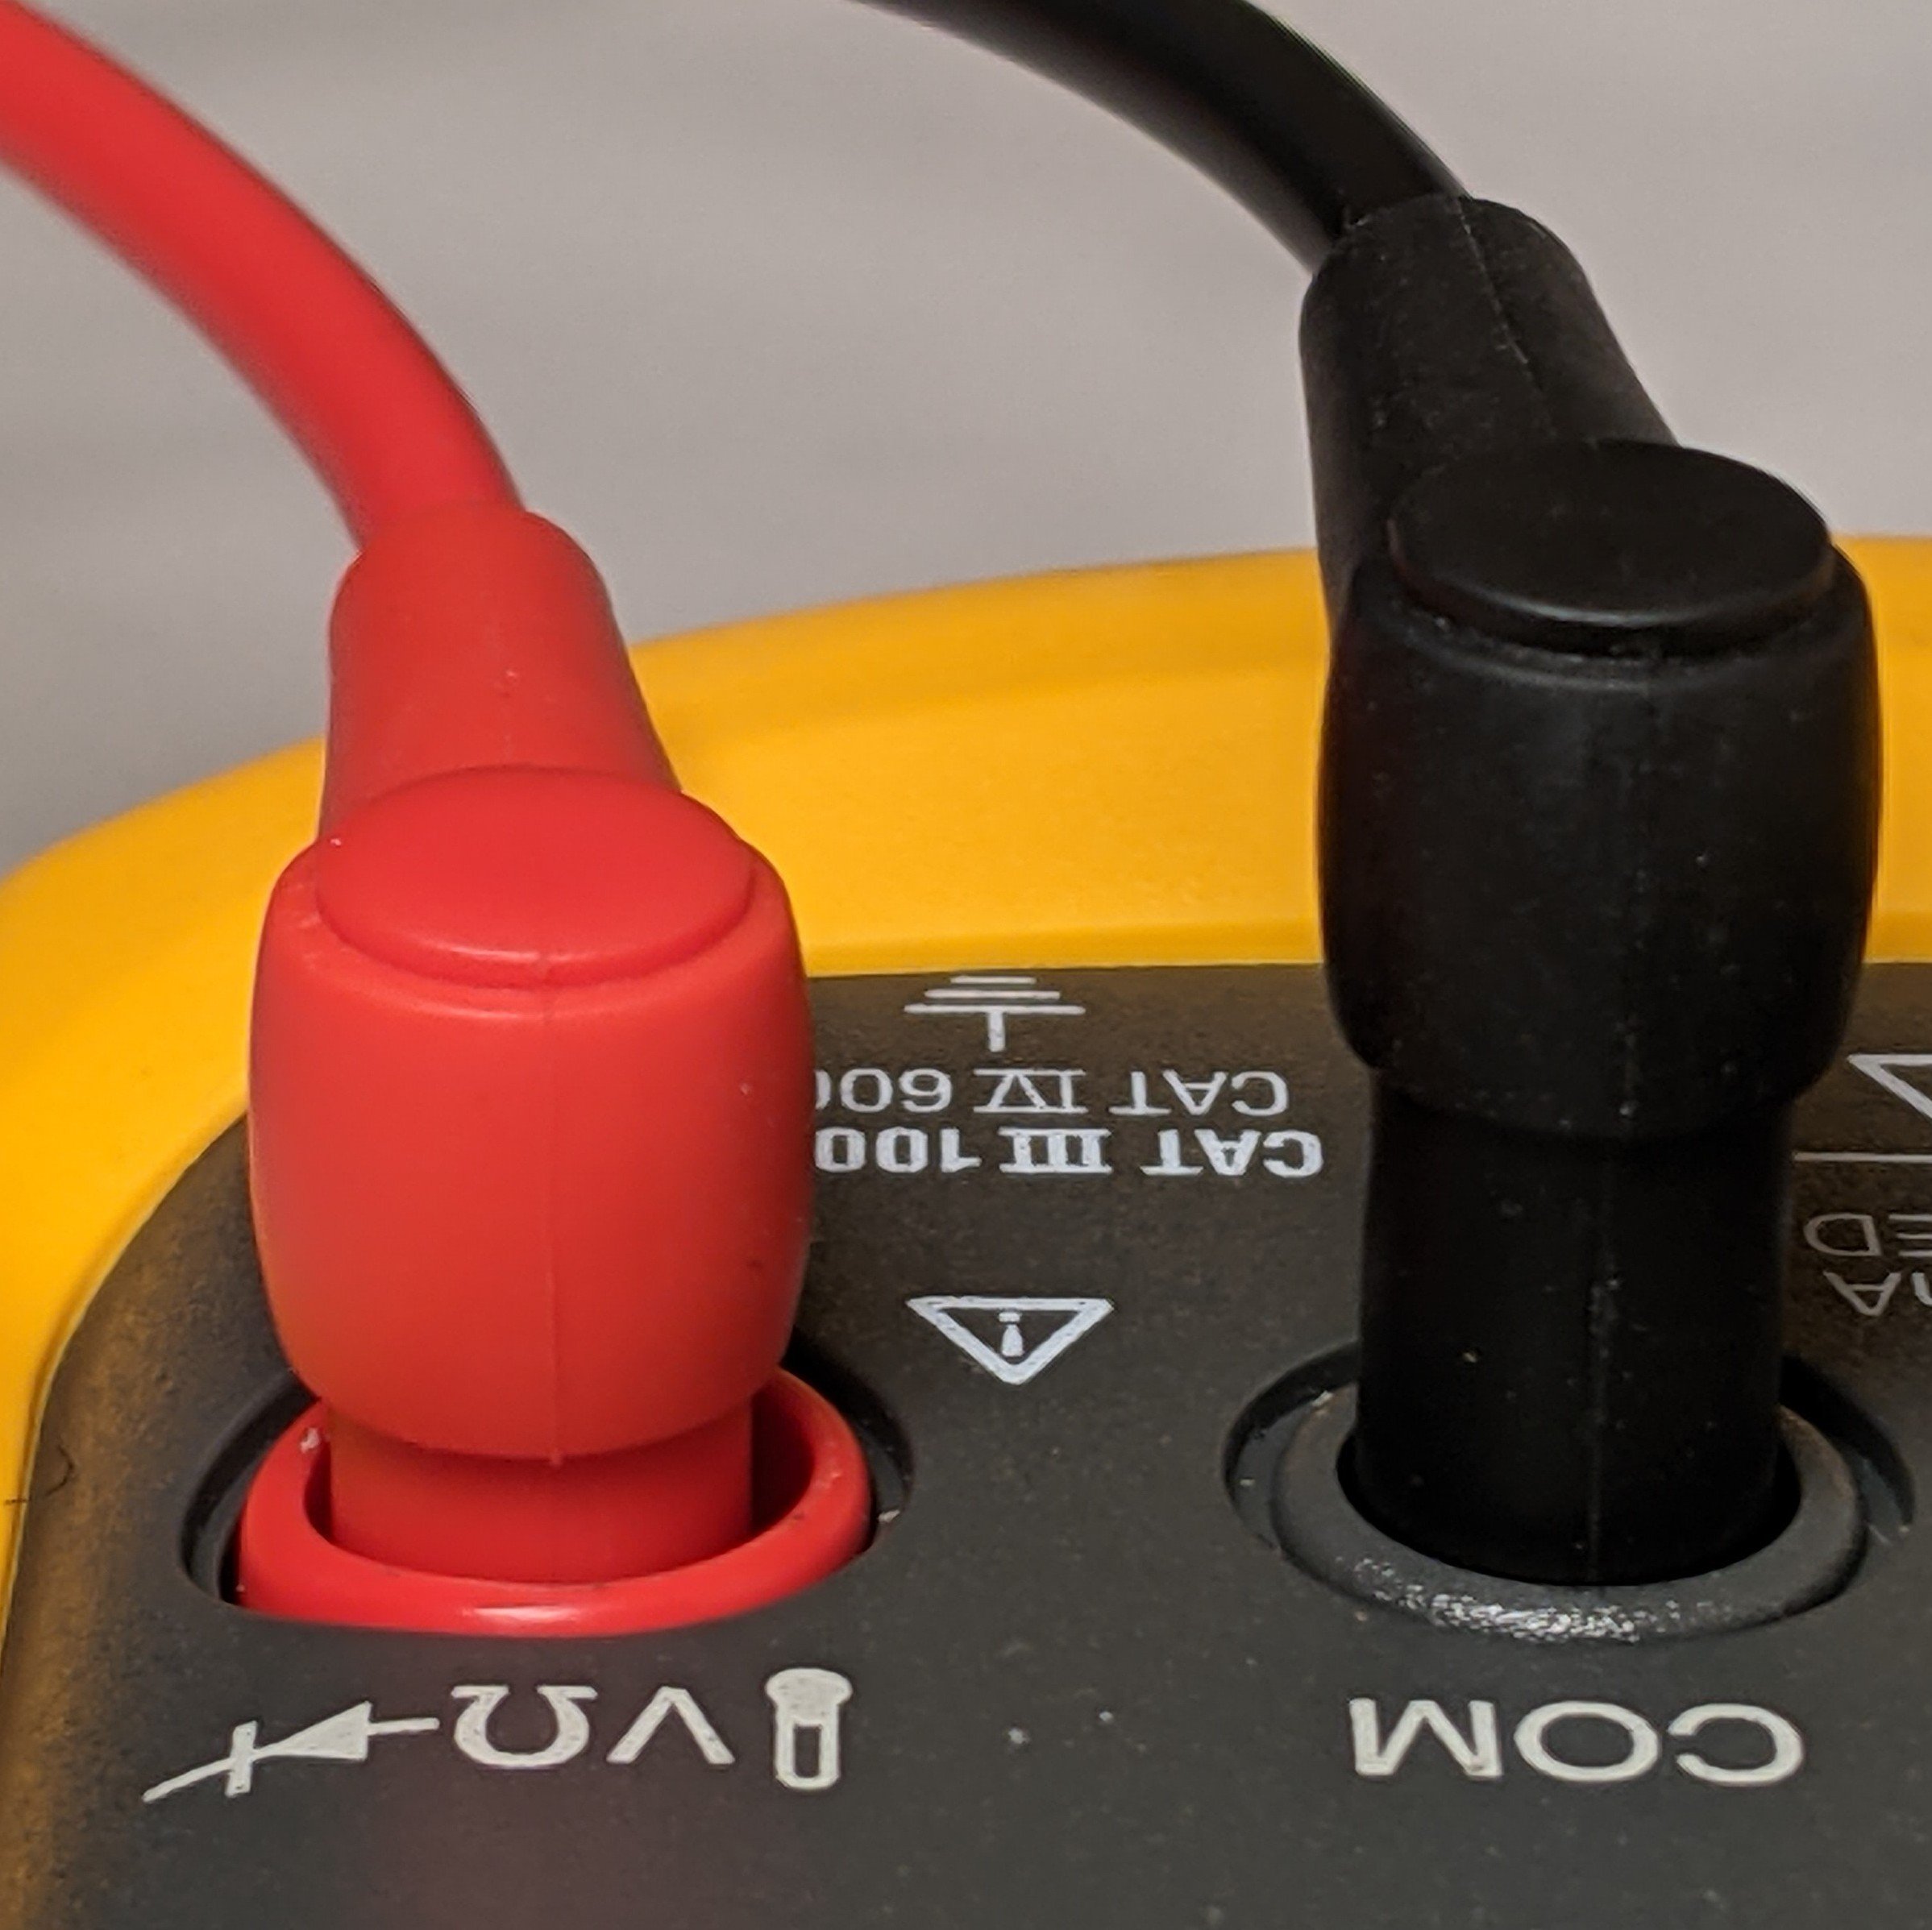 Fluke 8x V sikkerhetsnotat – forskyvning av svart testledning med rød ledning satt inn